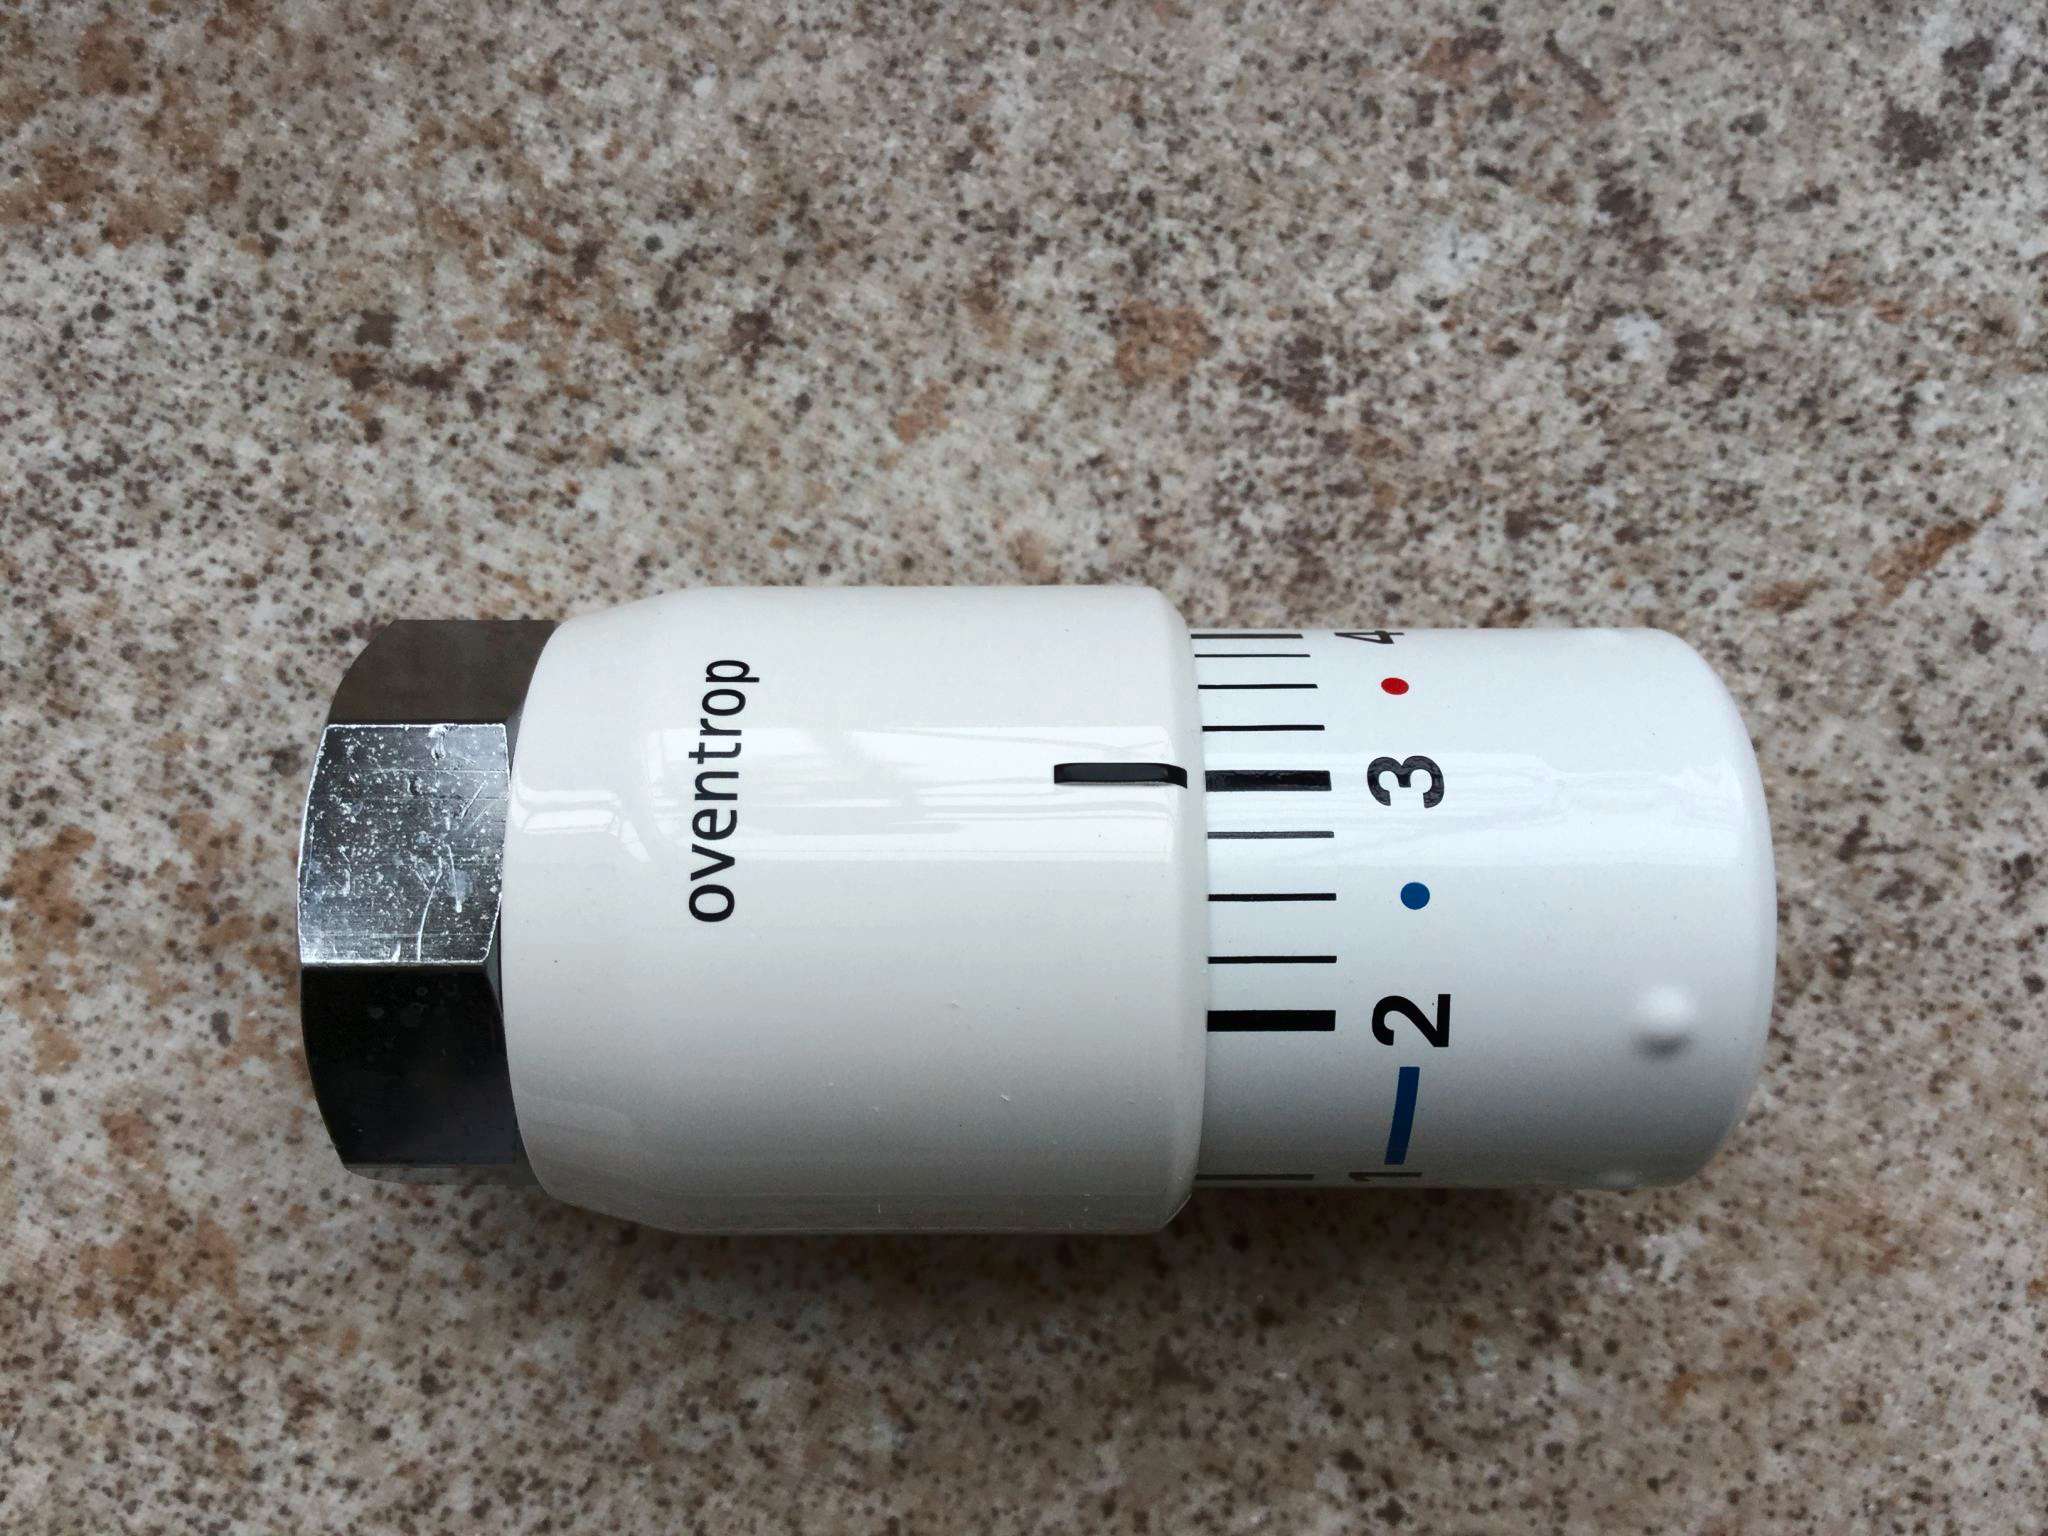 Головка термостатическая Oventrop, Uni sh, m30x1,5